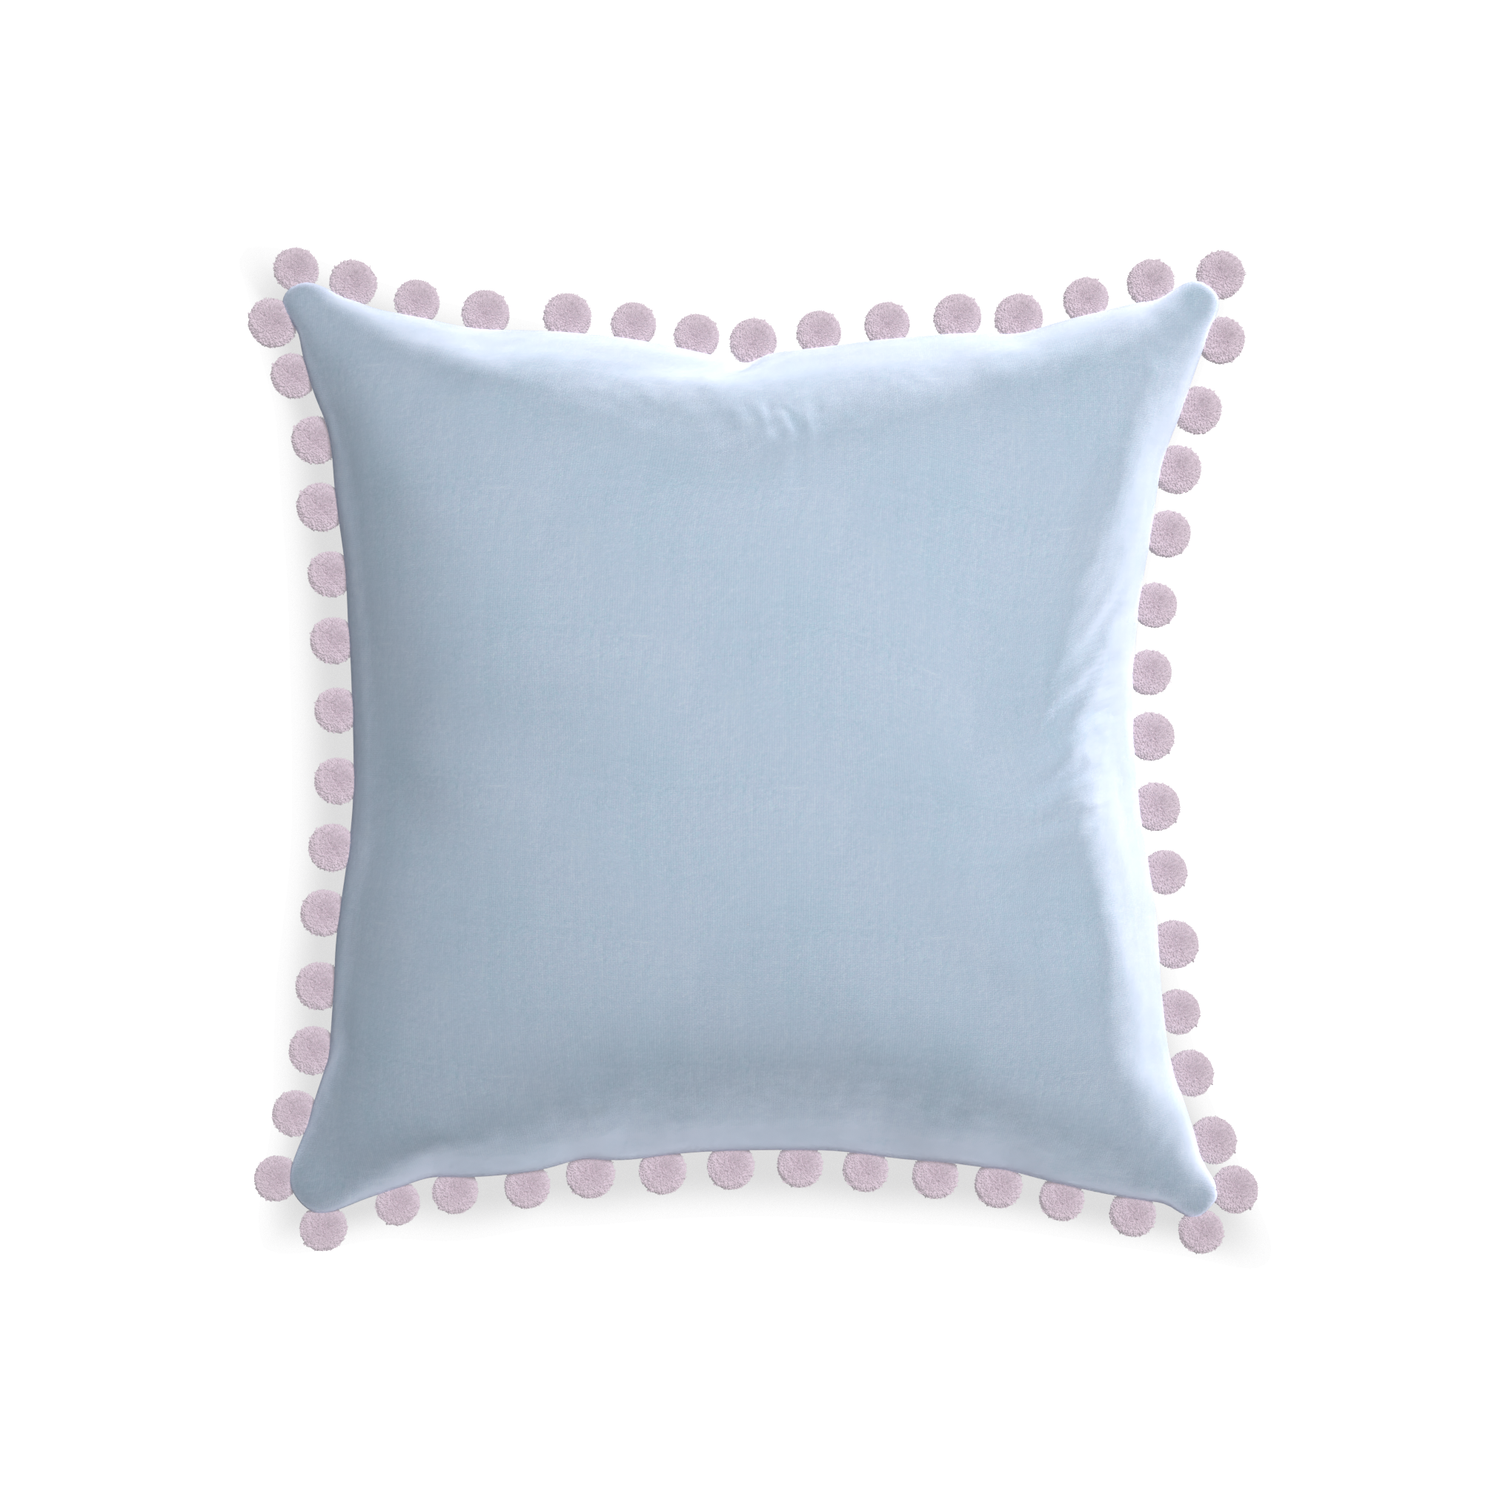 square light blue velvet pillow with lilac pom pom